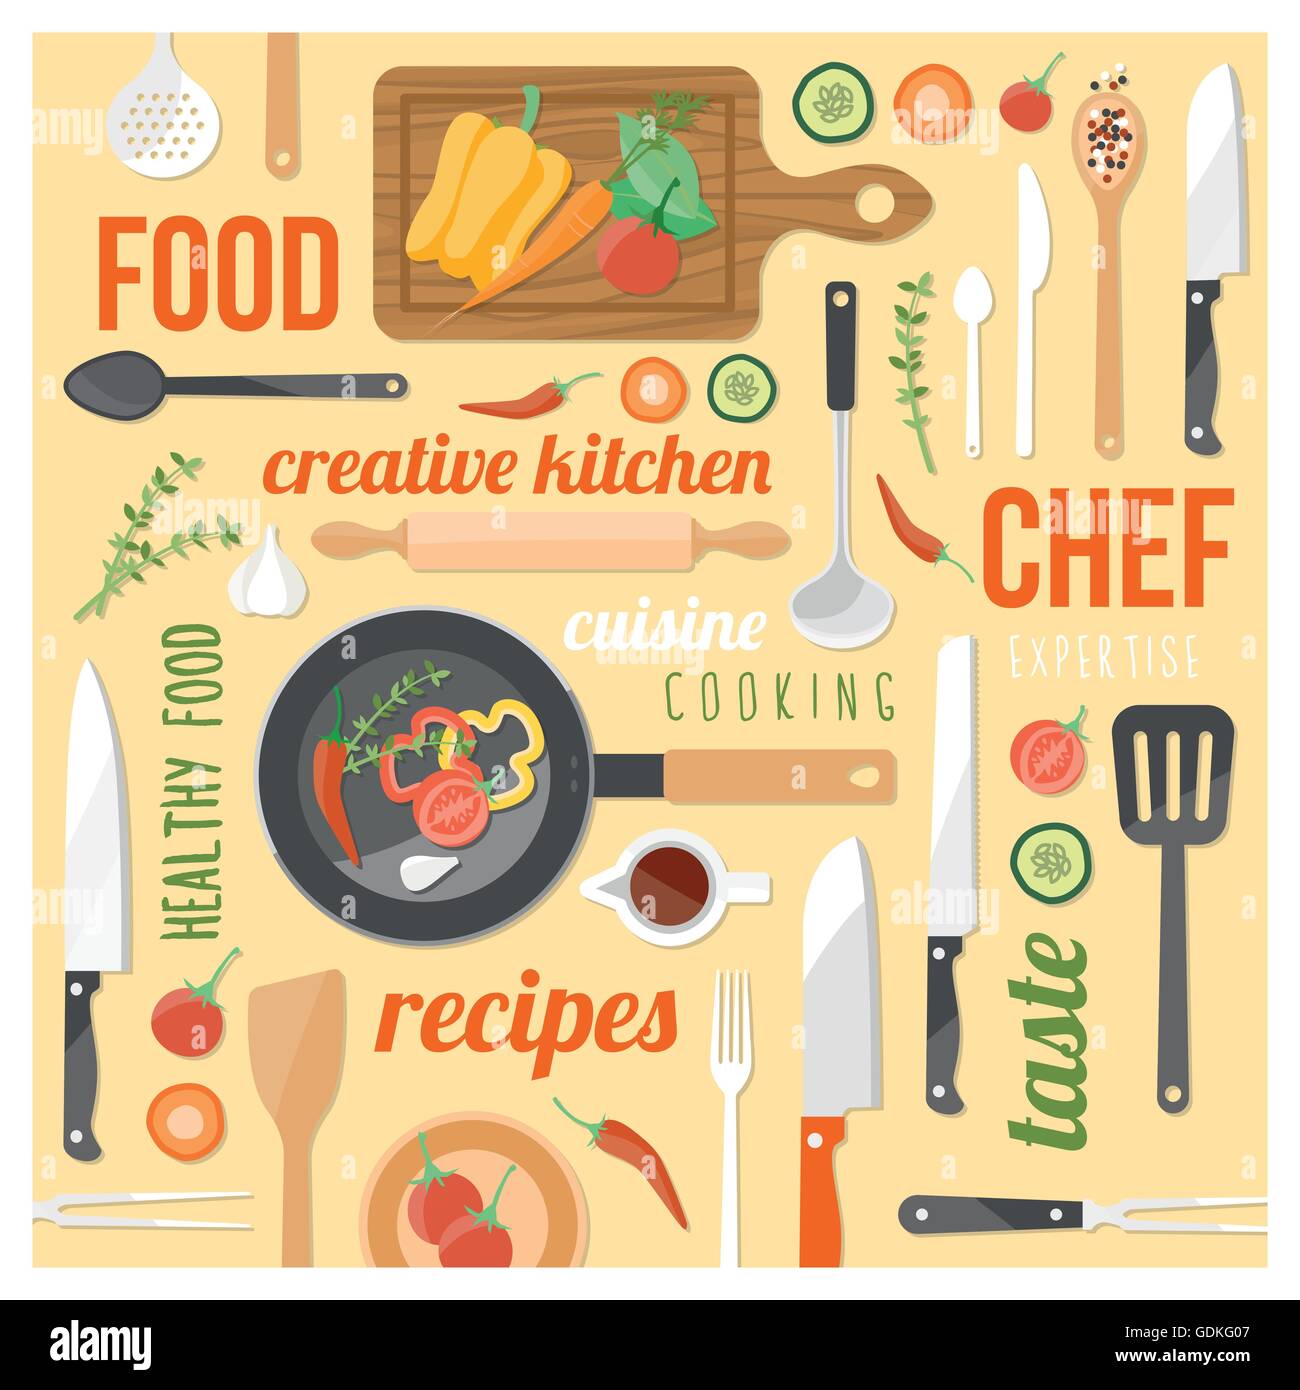 Kreatives Kochen Hintergrund mit Küchenutensilien, Lebensmittelzutaten und Worte auf einem gelben Hintergrund in einem quadratischen Rahmen Stock Vektor